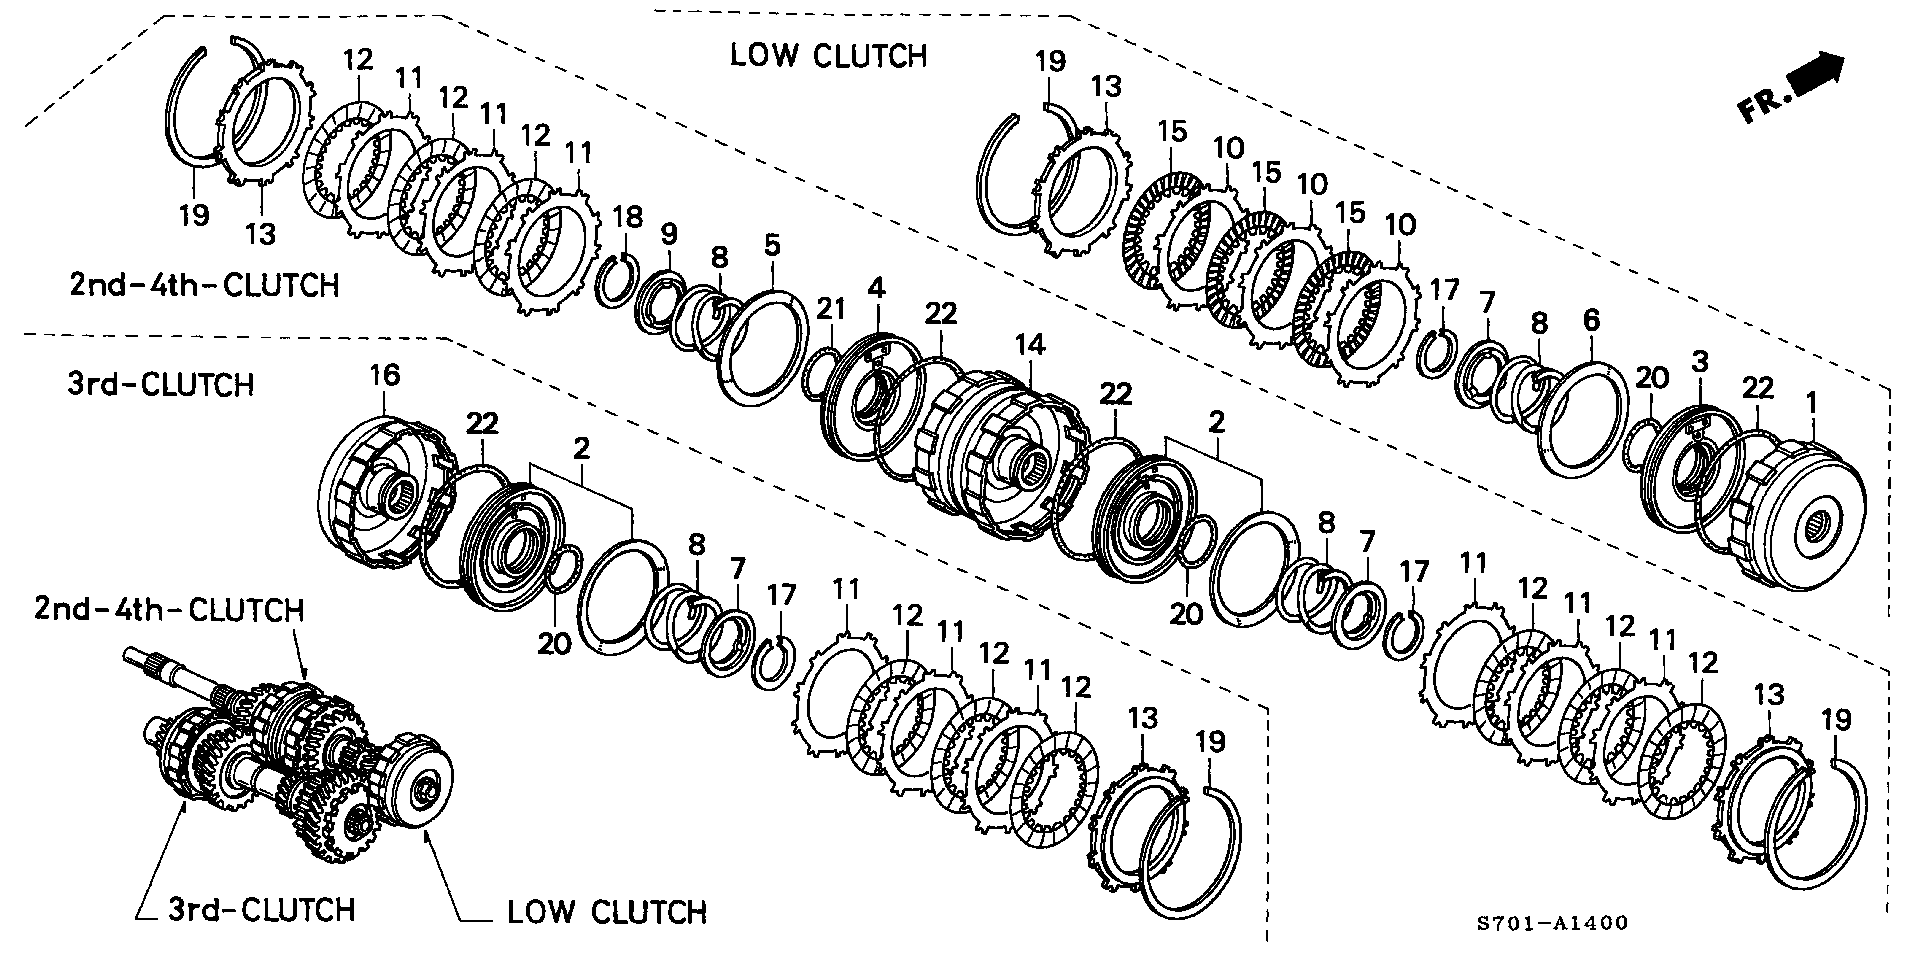 CLUTCH(4WD)(-110)